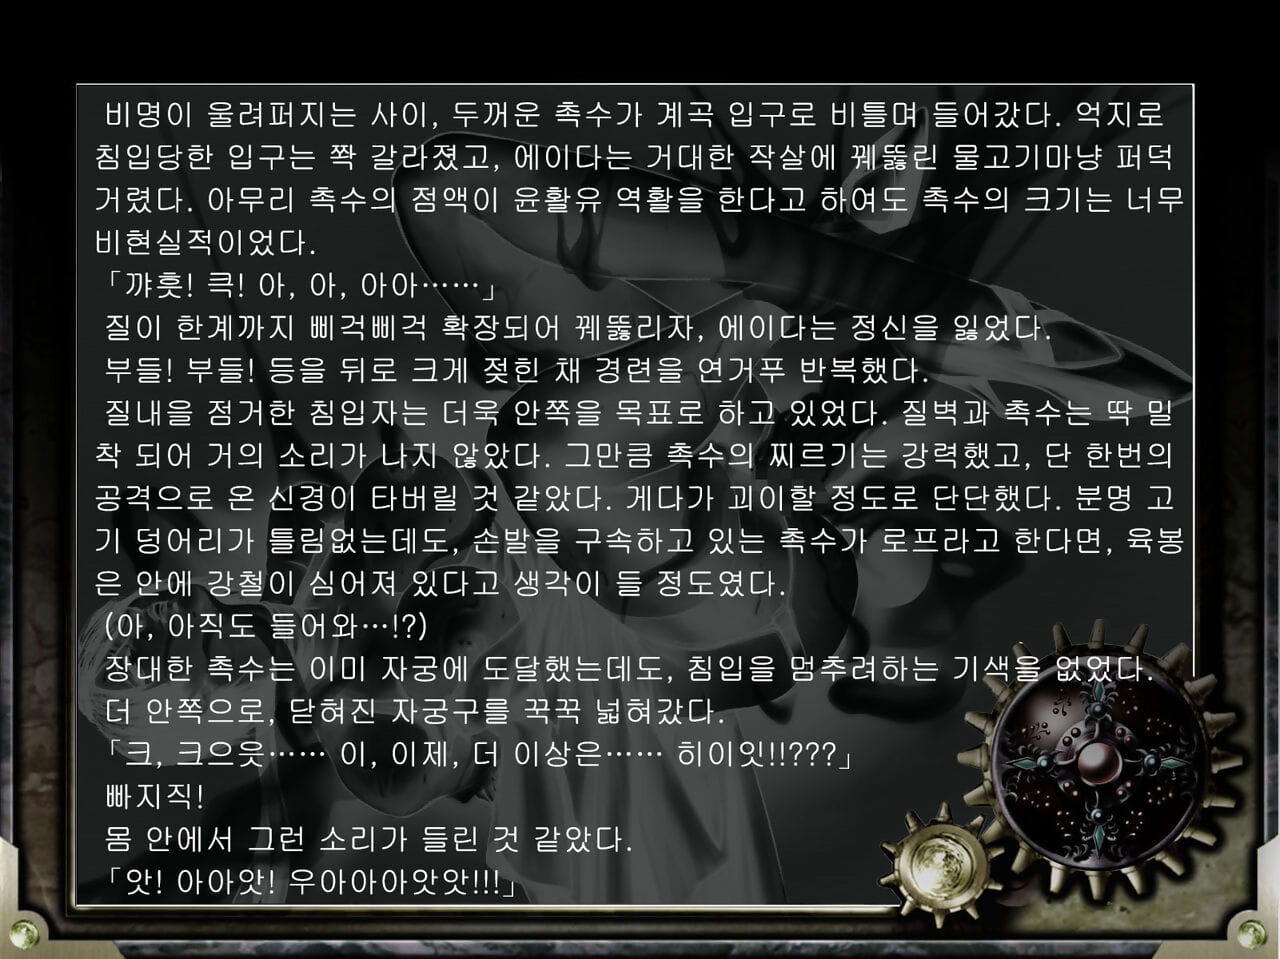 जंक केंद्र कायोकोको भवन जैव-विज्ञान बलात्कार निवासी बुराई 4 कोरियाई हिस्सा 2